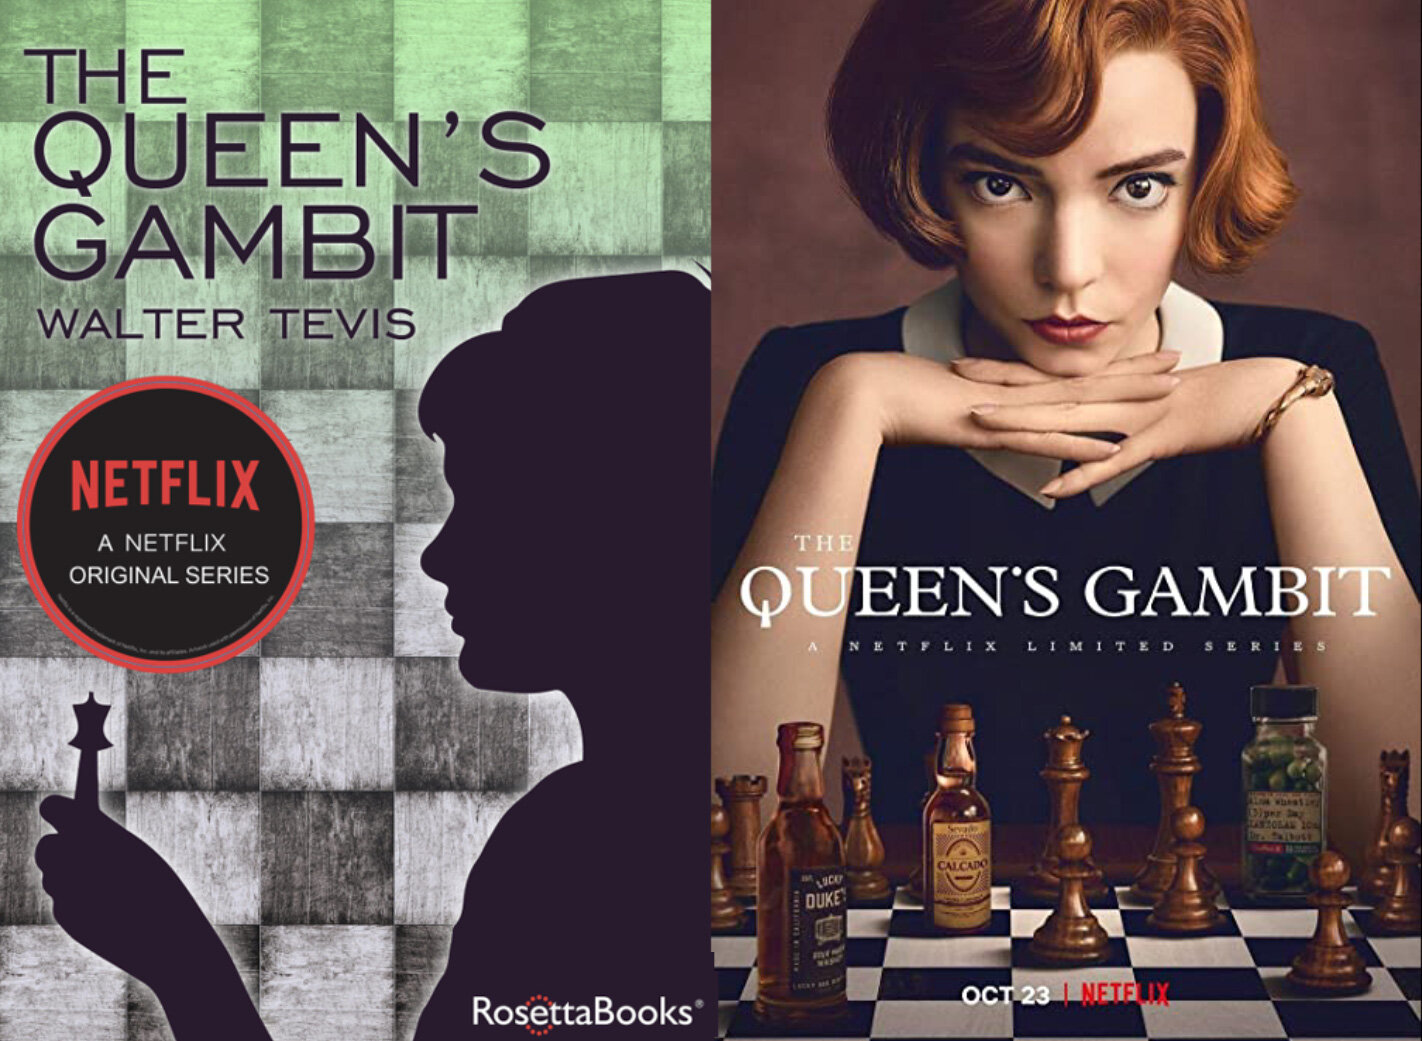 Sorry, The Queen's Gambit season 2 isn't happening